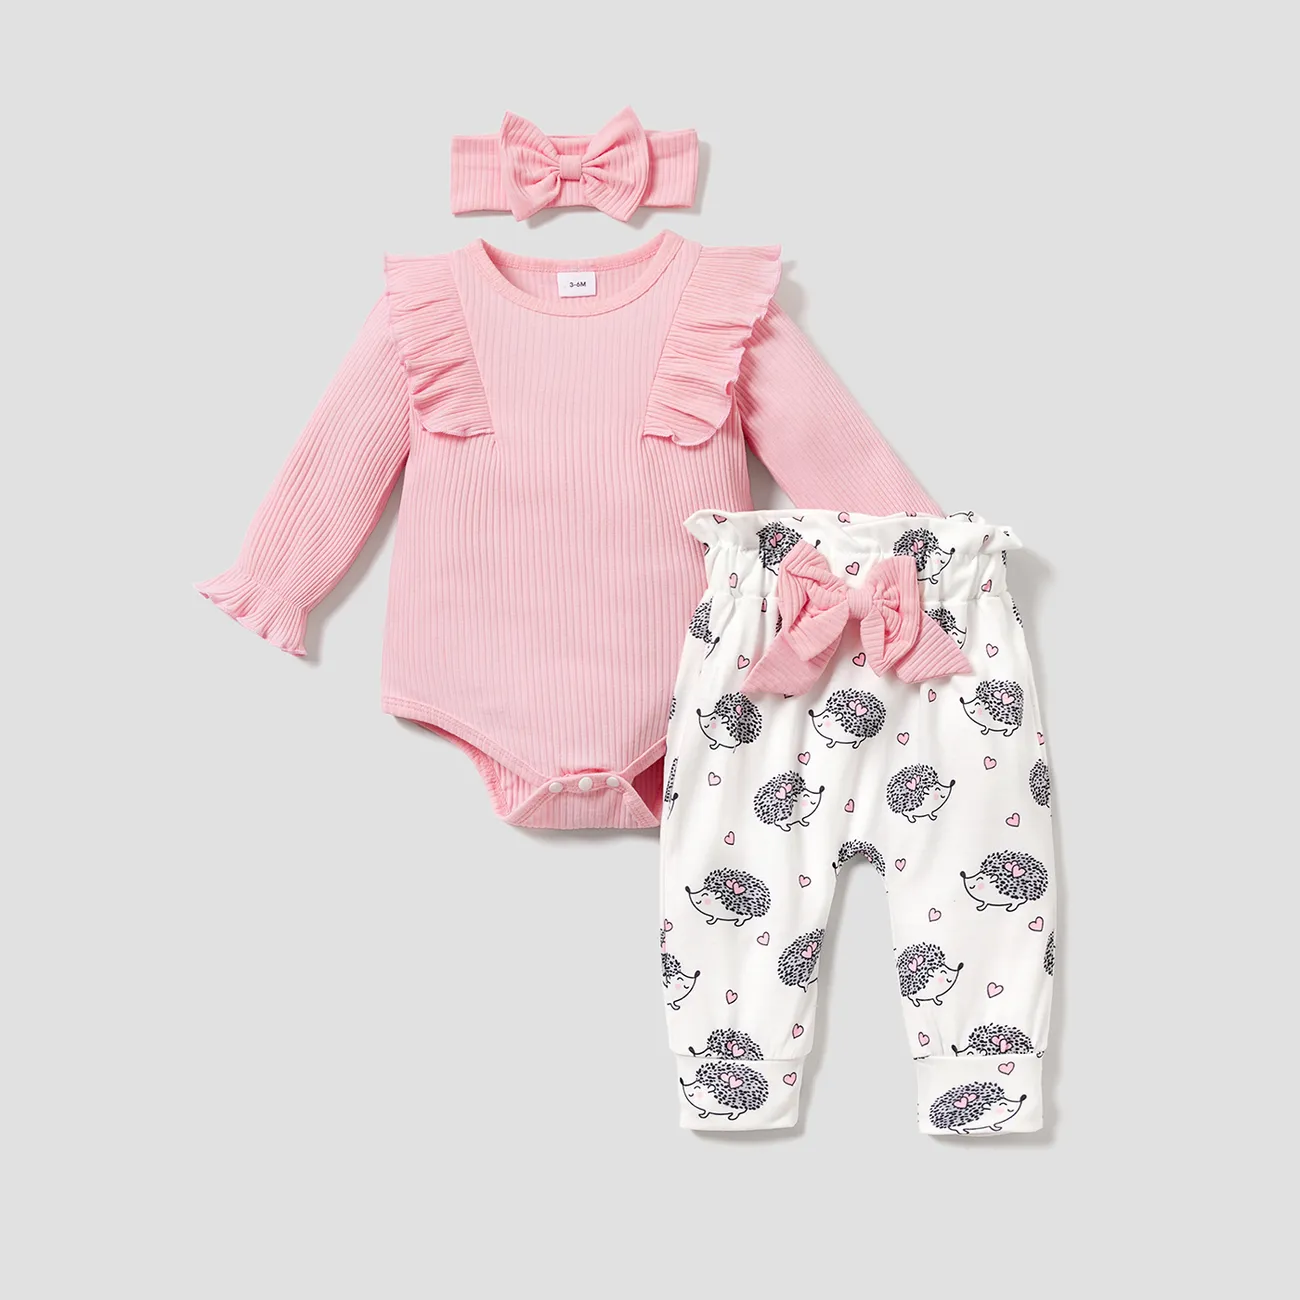 3 unidades Bebé Menina Costuras de tecido Coala Bonito Conjunto para bebé  big image 1